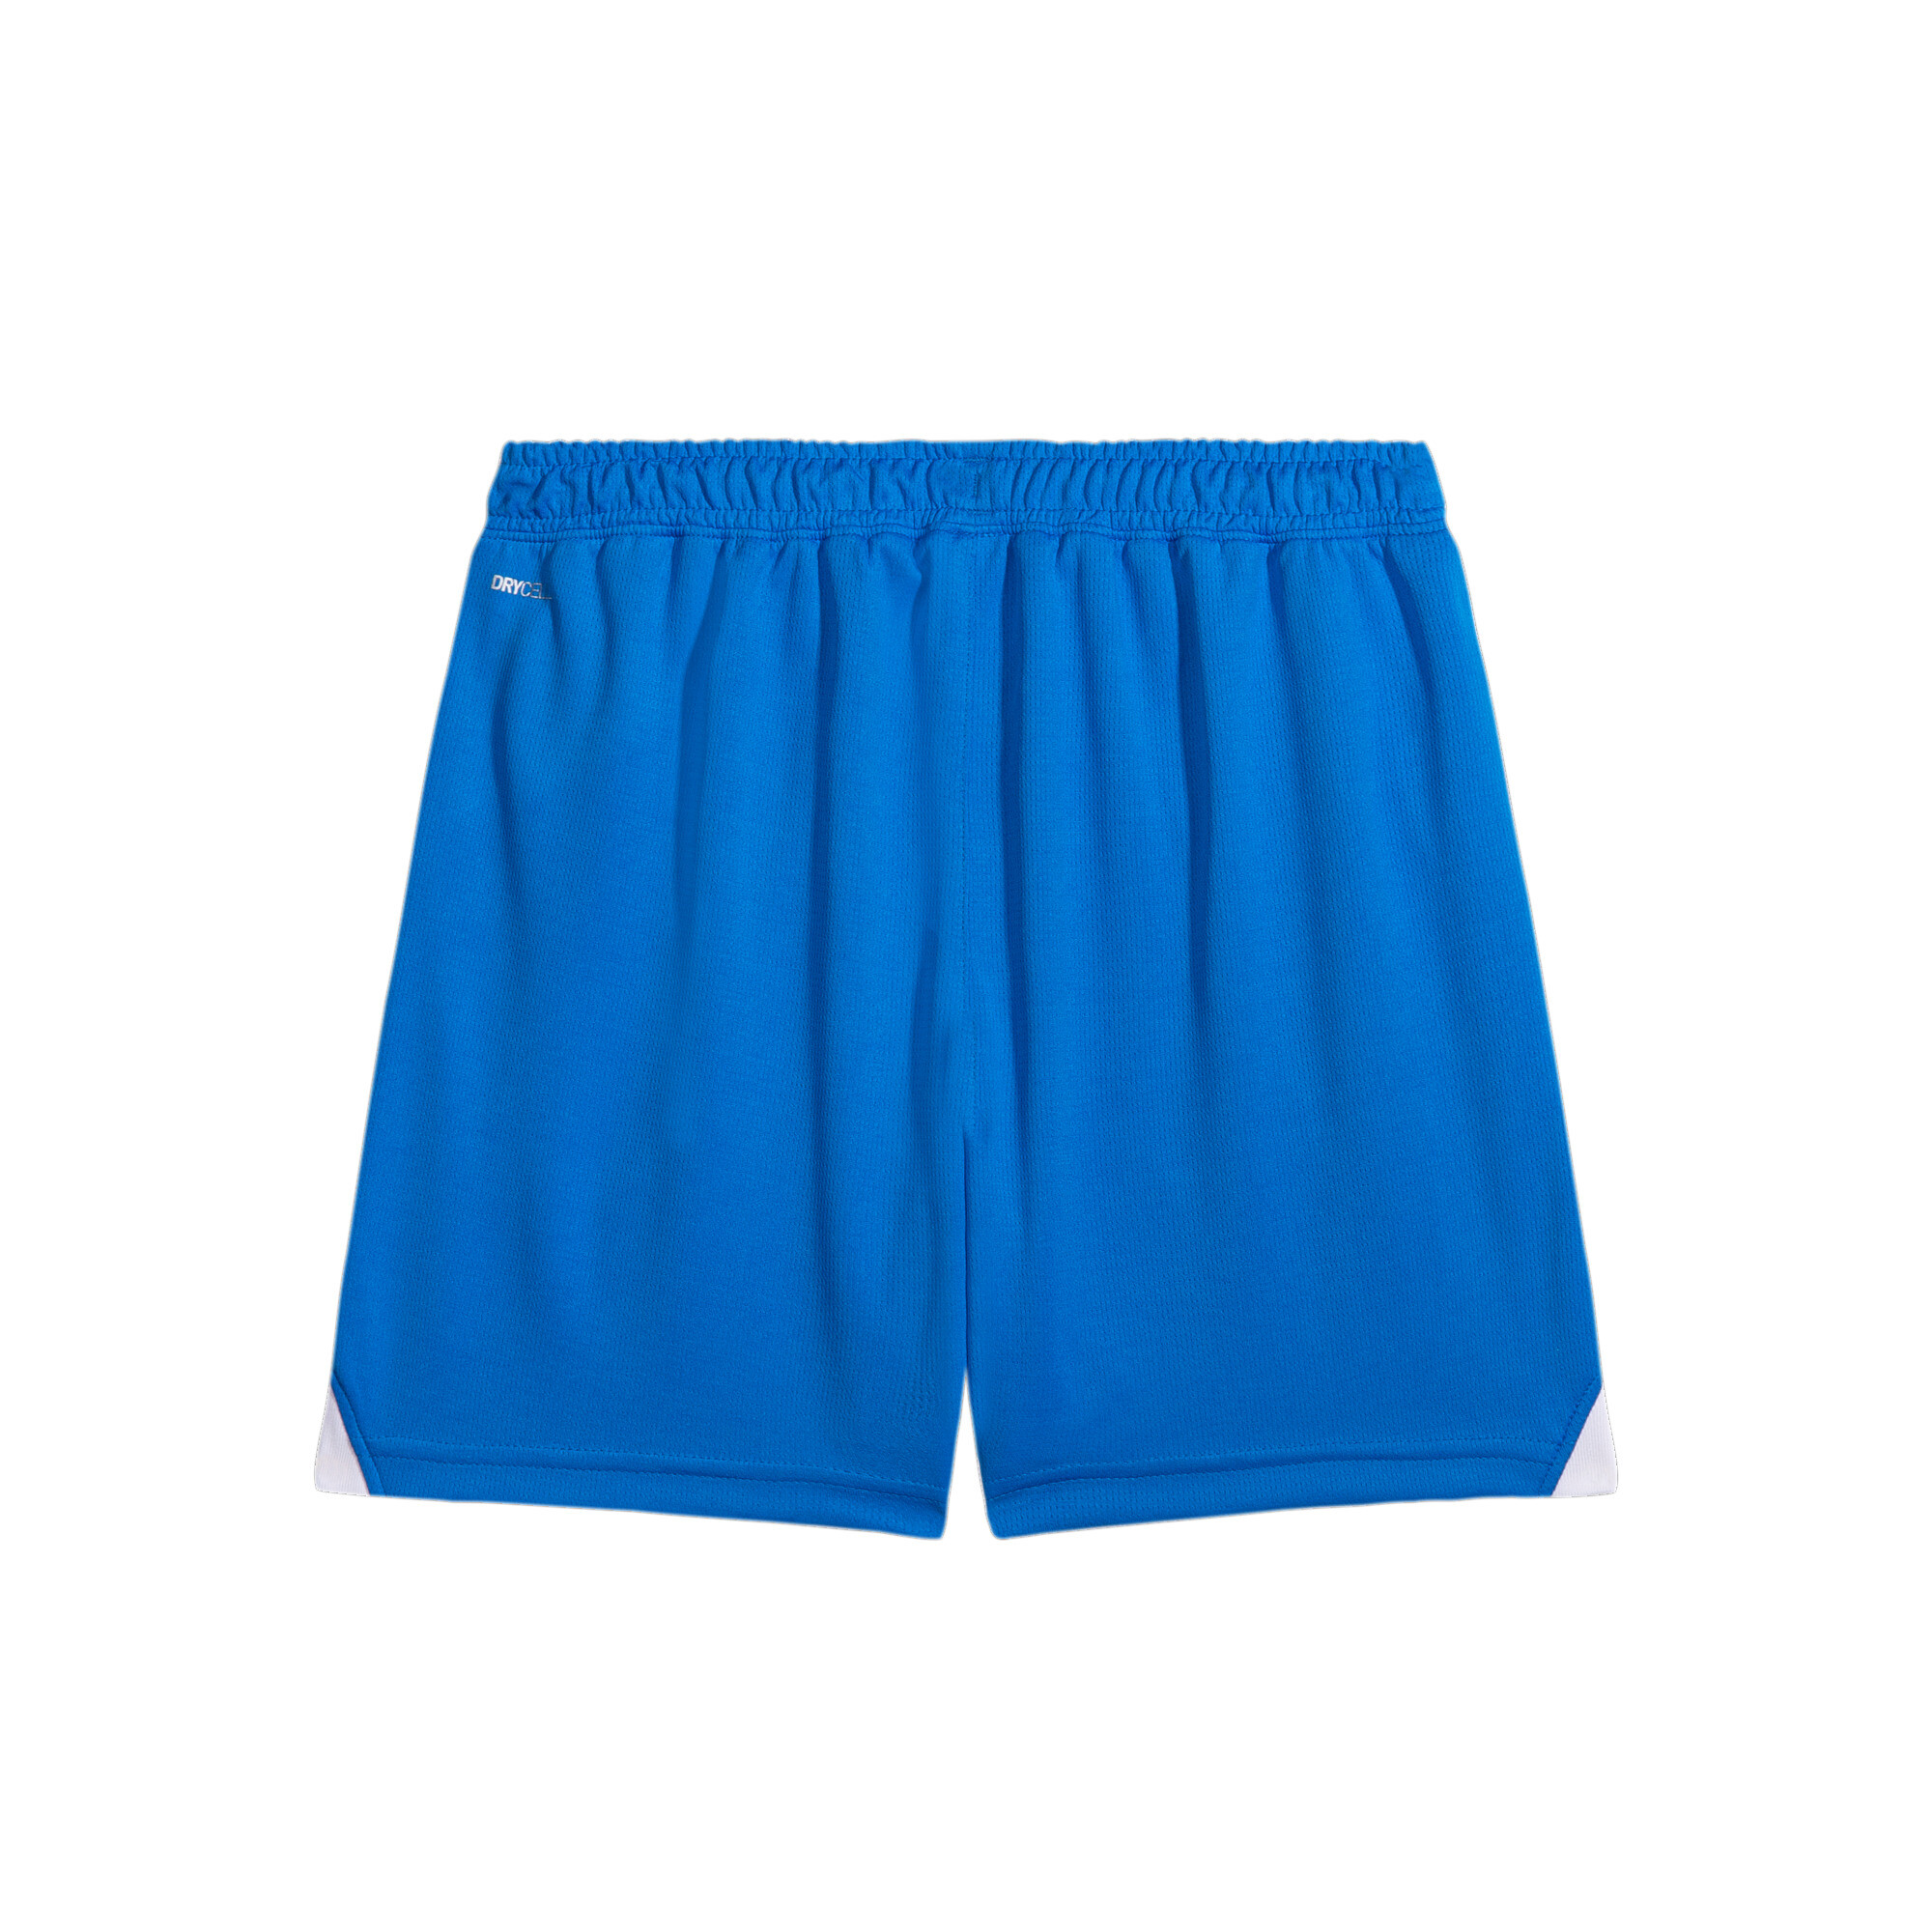 PUMA Al Hilal 23/24 Replica Shorts In Blue, Size 1-2 Youth